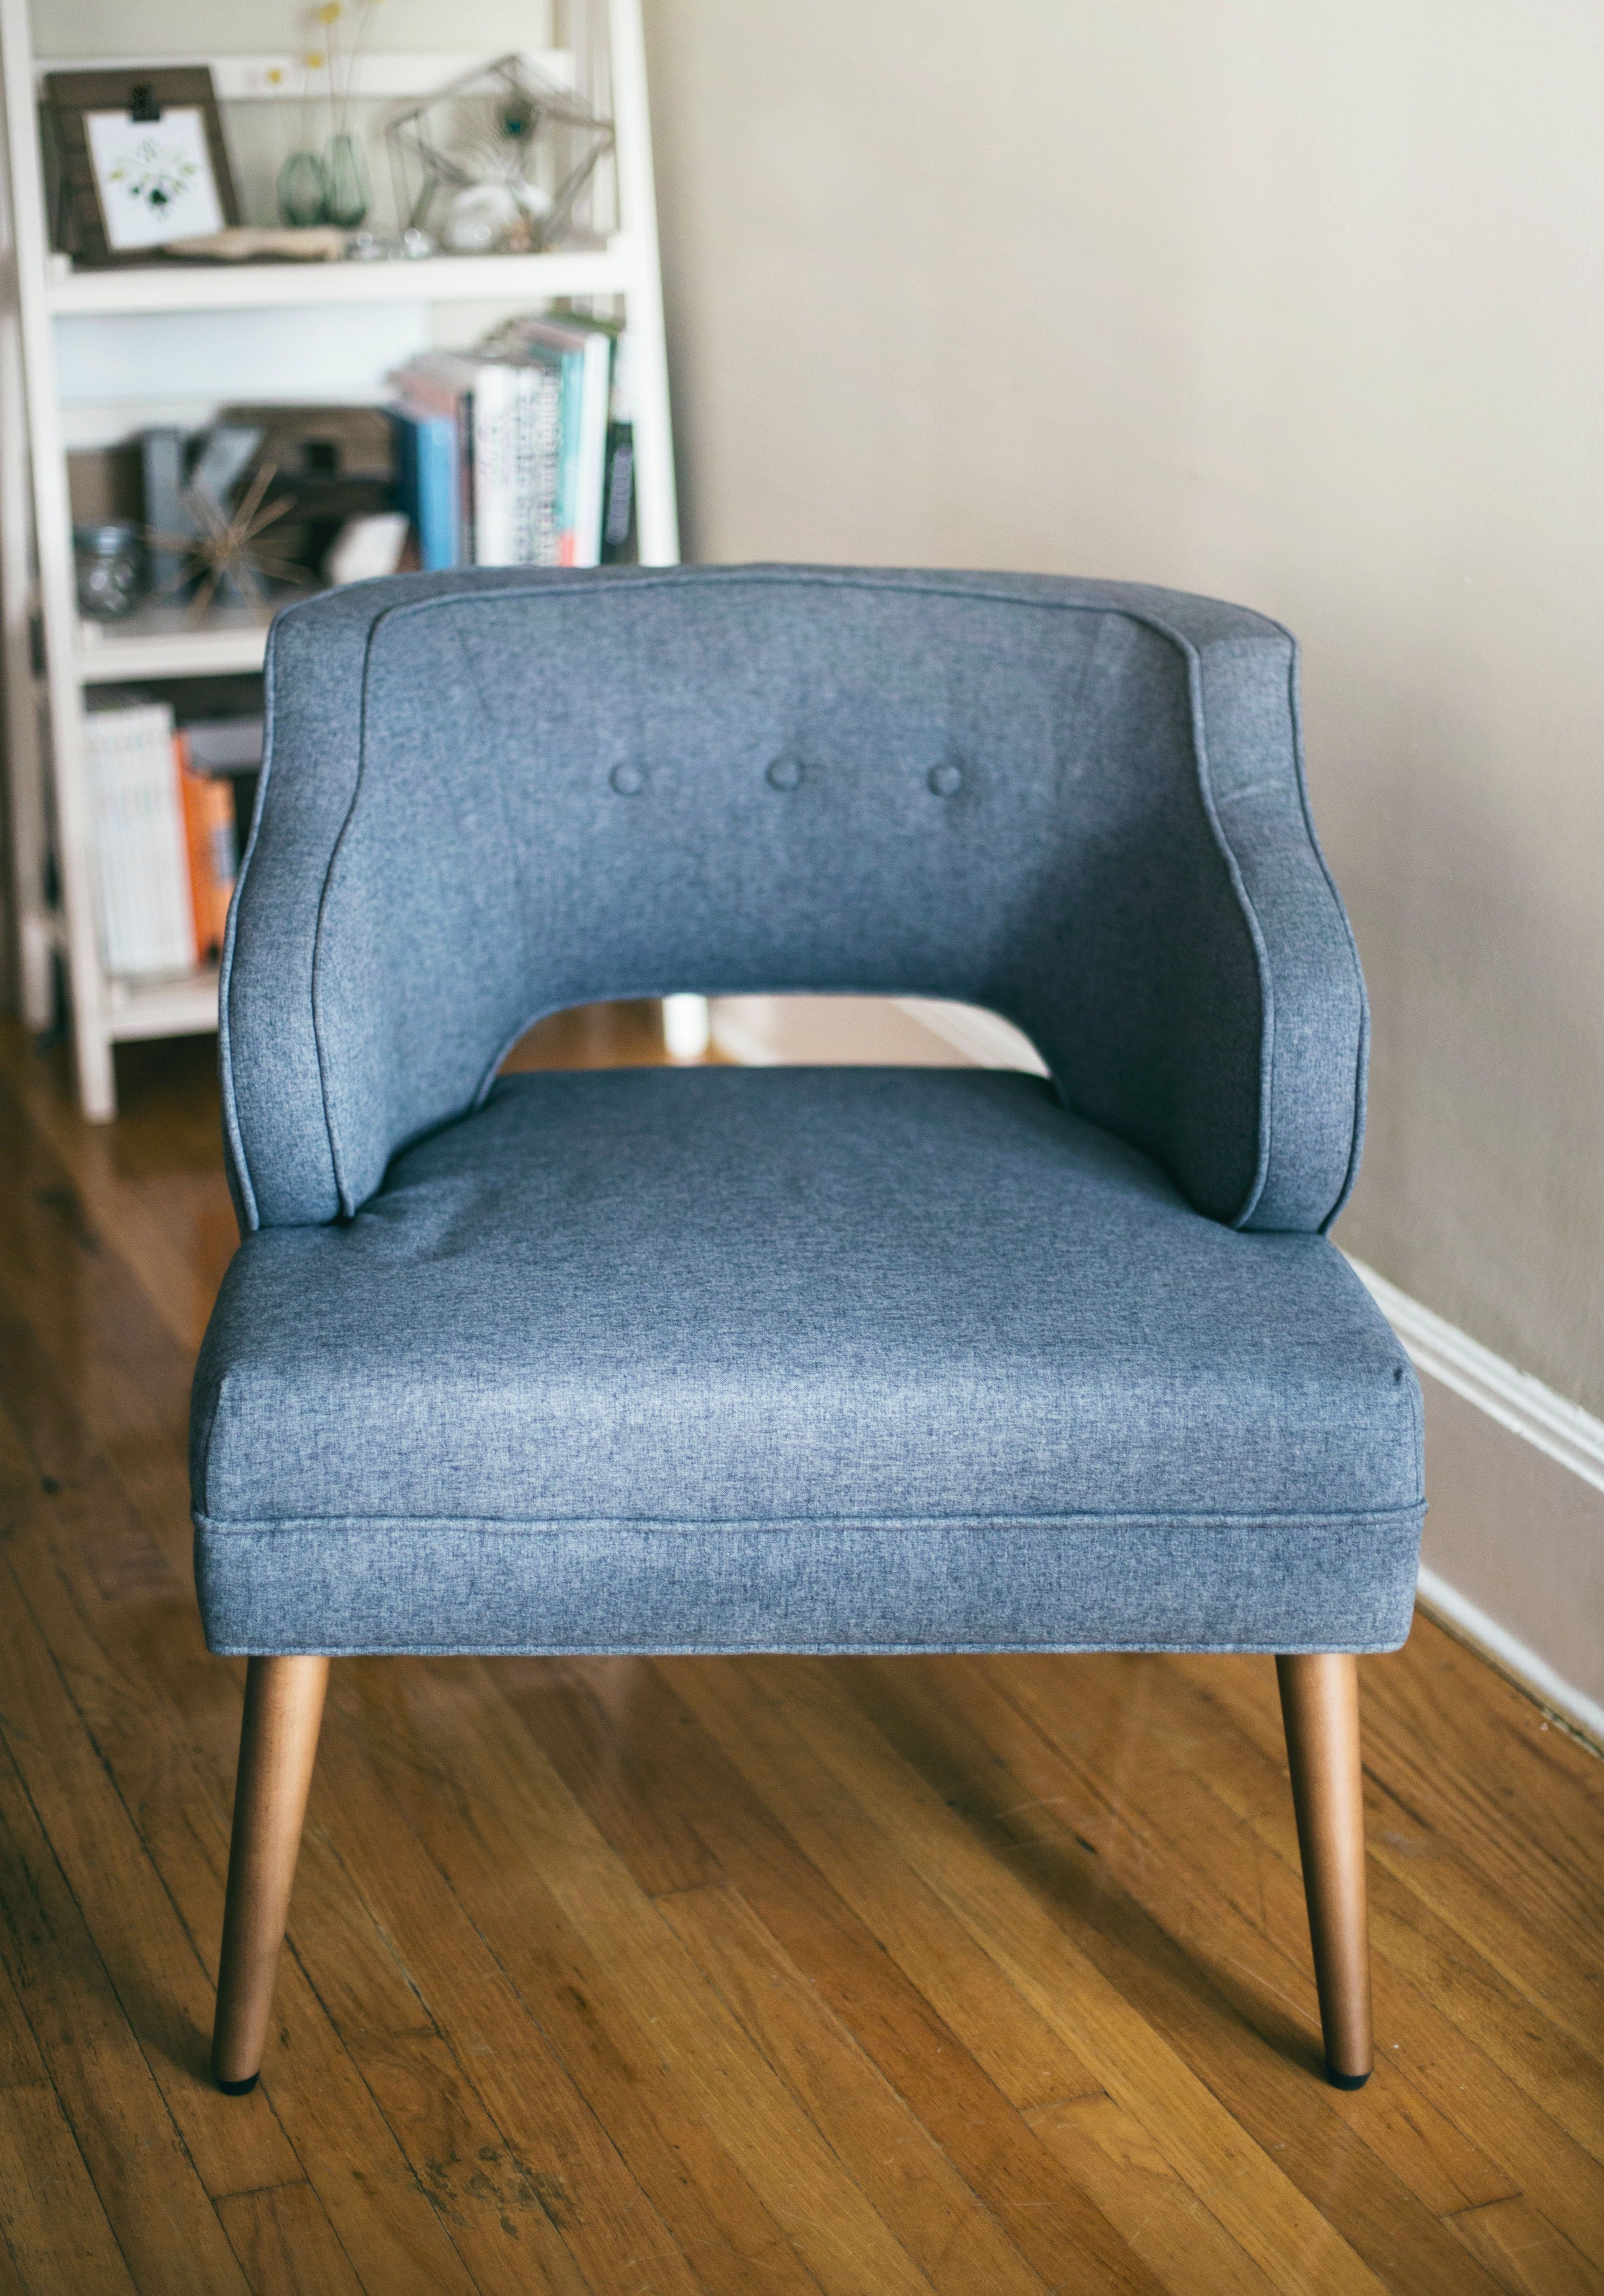 Blue Scandinavian arm chair